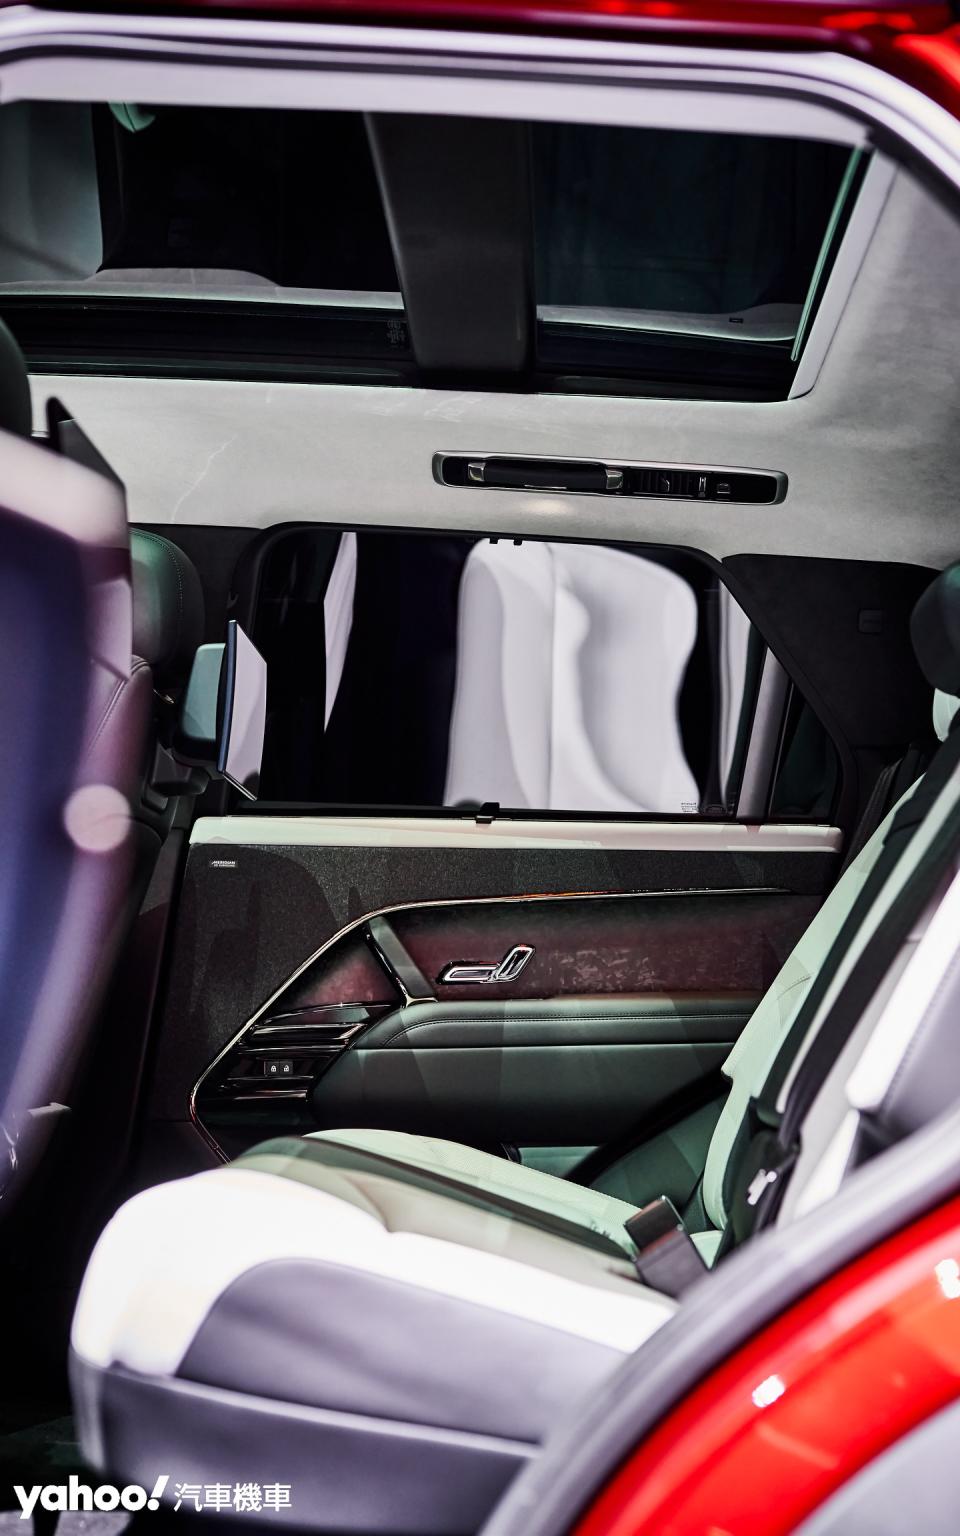 採五人座配置並注重空間舒適性與兼容性能SUV的重點延伸。